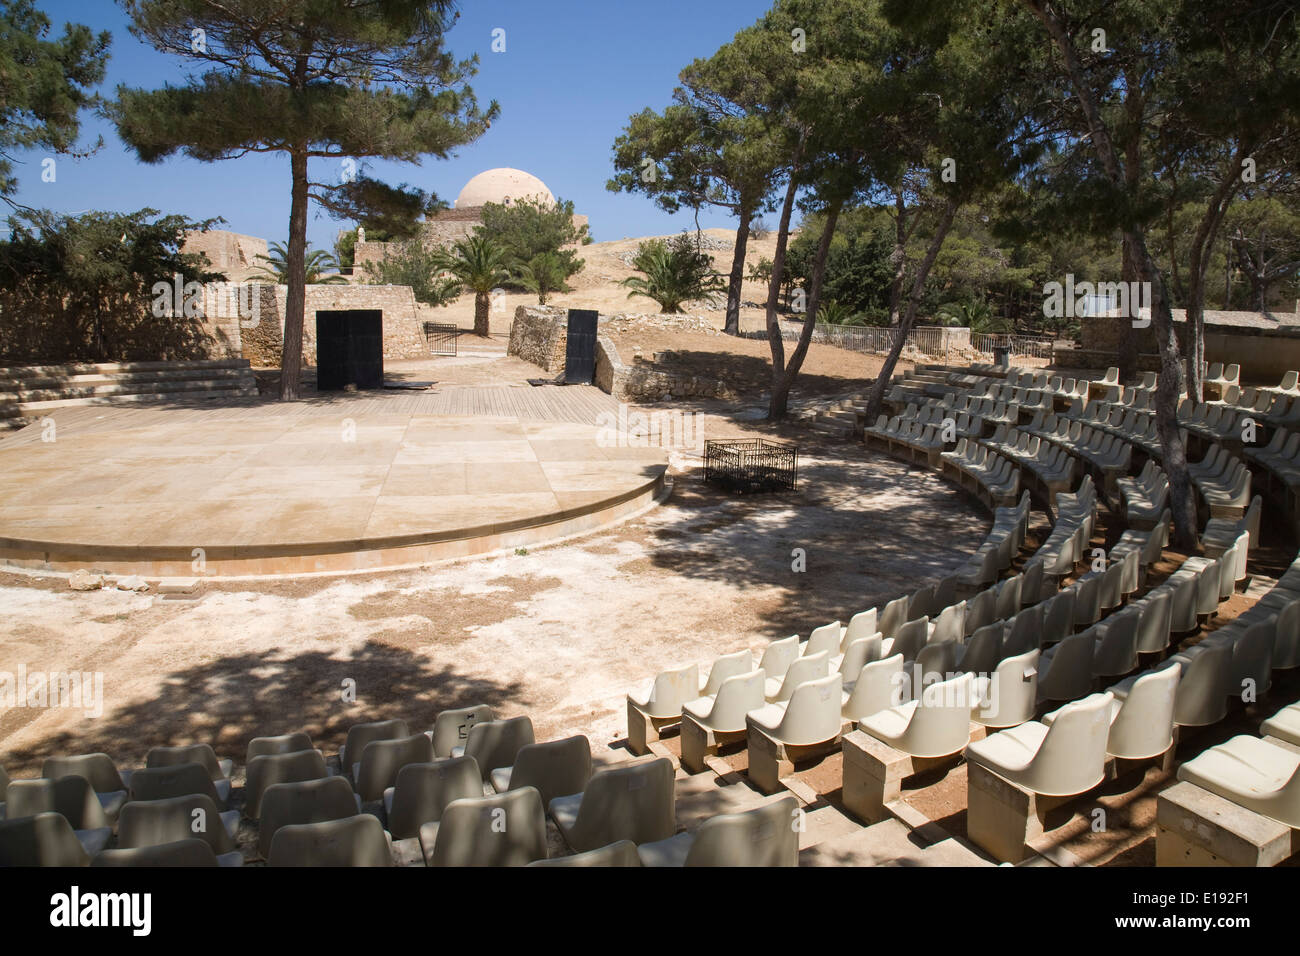 The Erofili Theatre in the Fortezza, Rethymno, Crete. Stock Photo